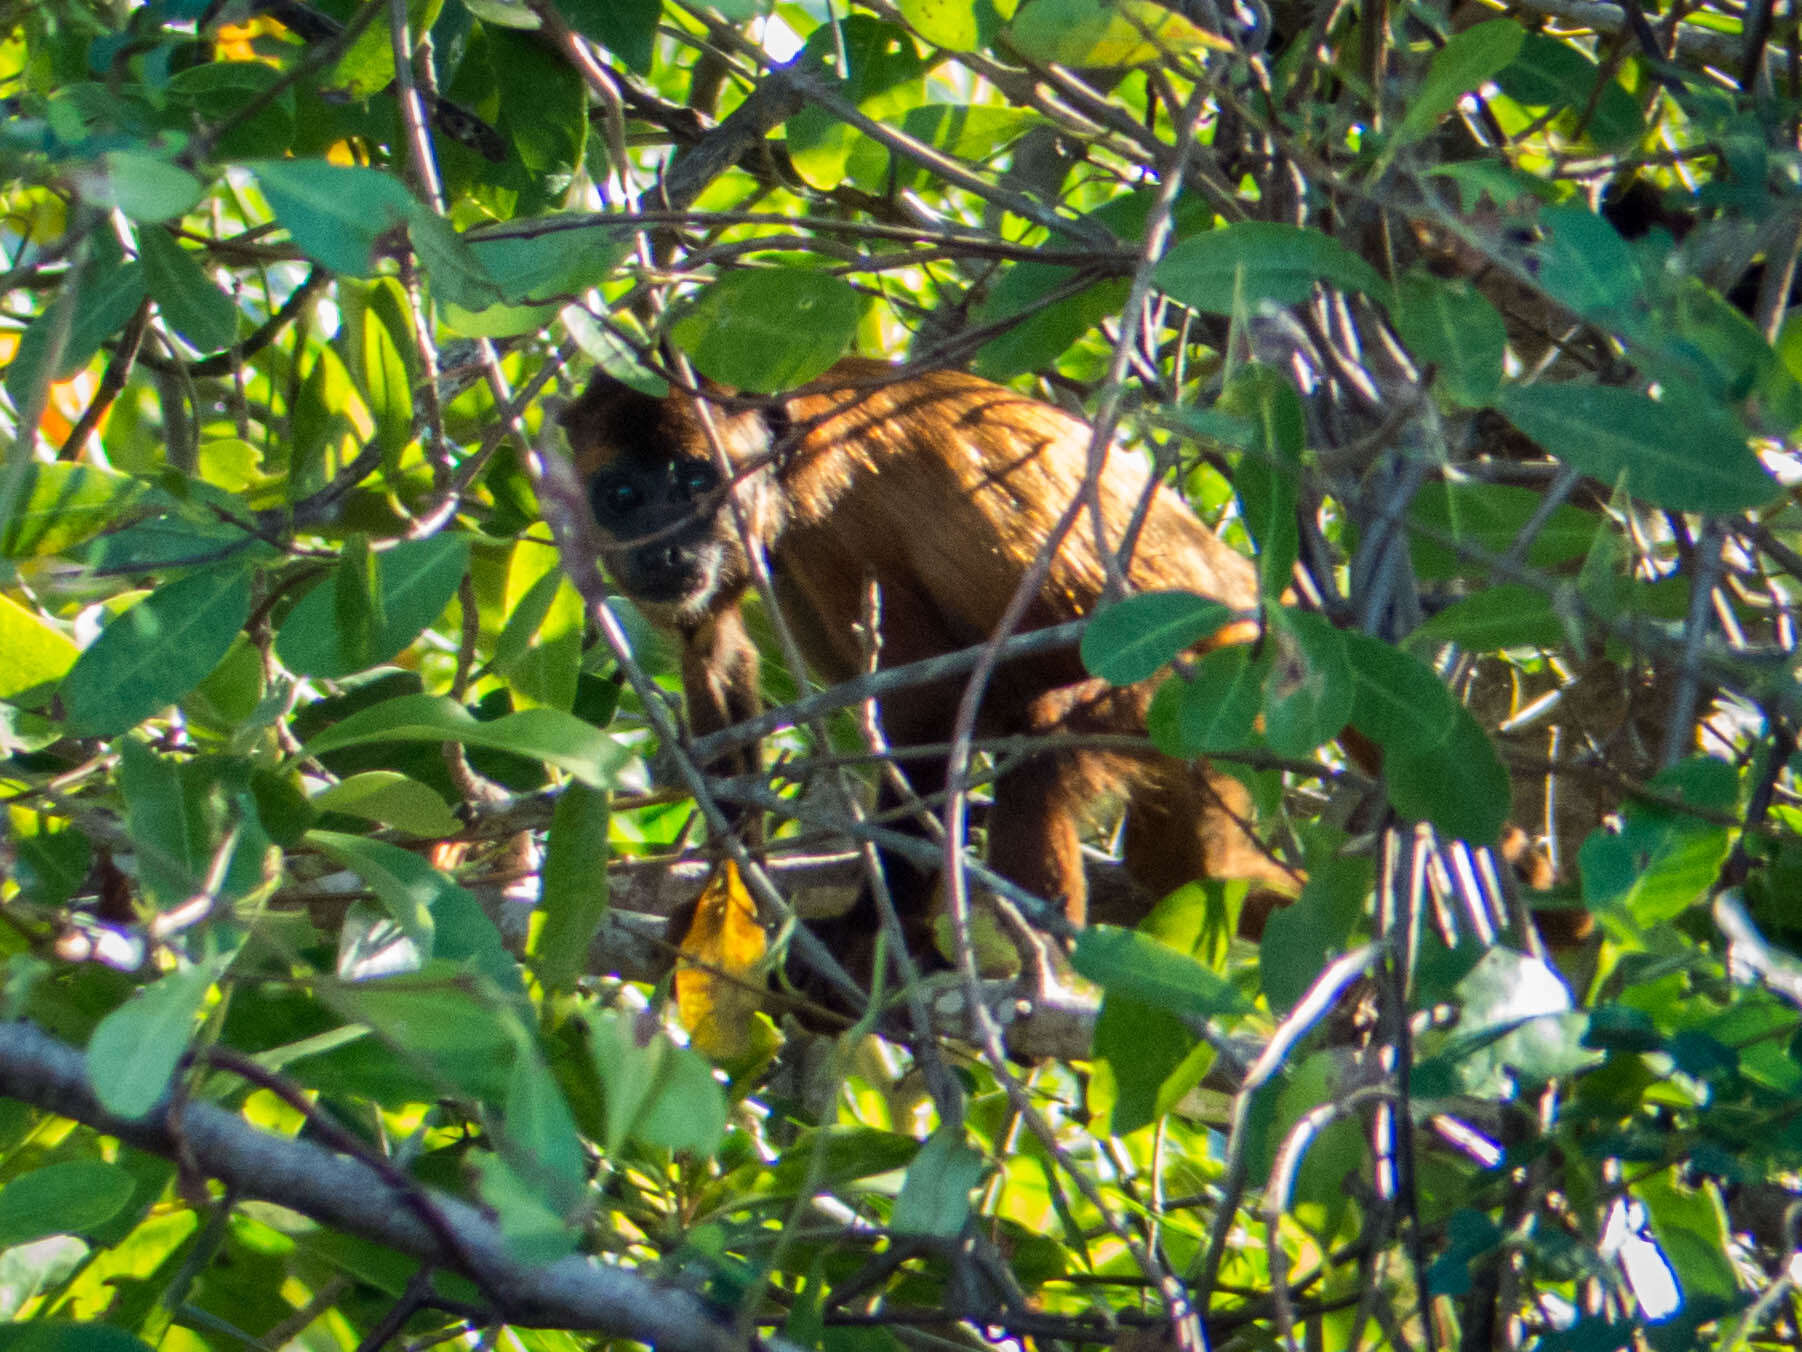 Image of Maranhão Red-handed Howler Monkey